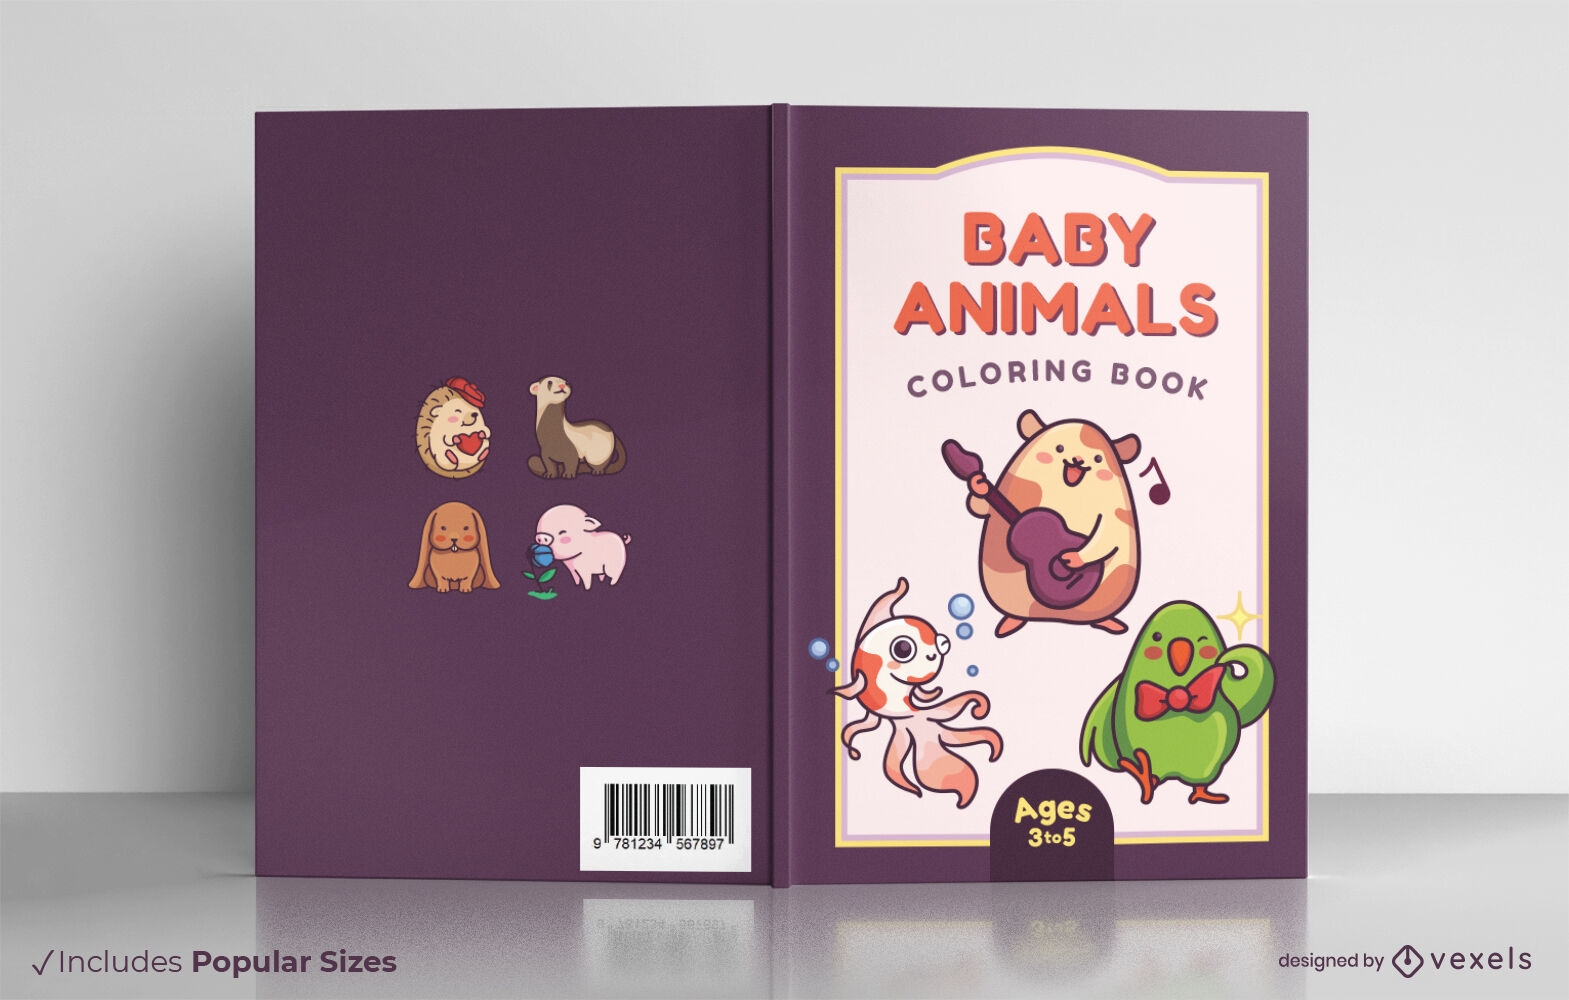 Dise?o de portada de libro para colorear de animales beb?s